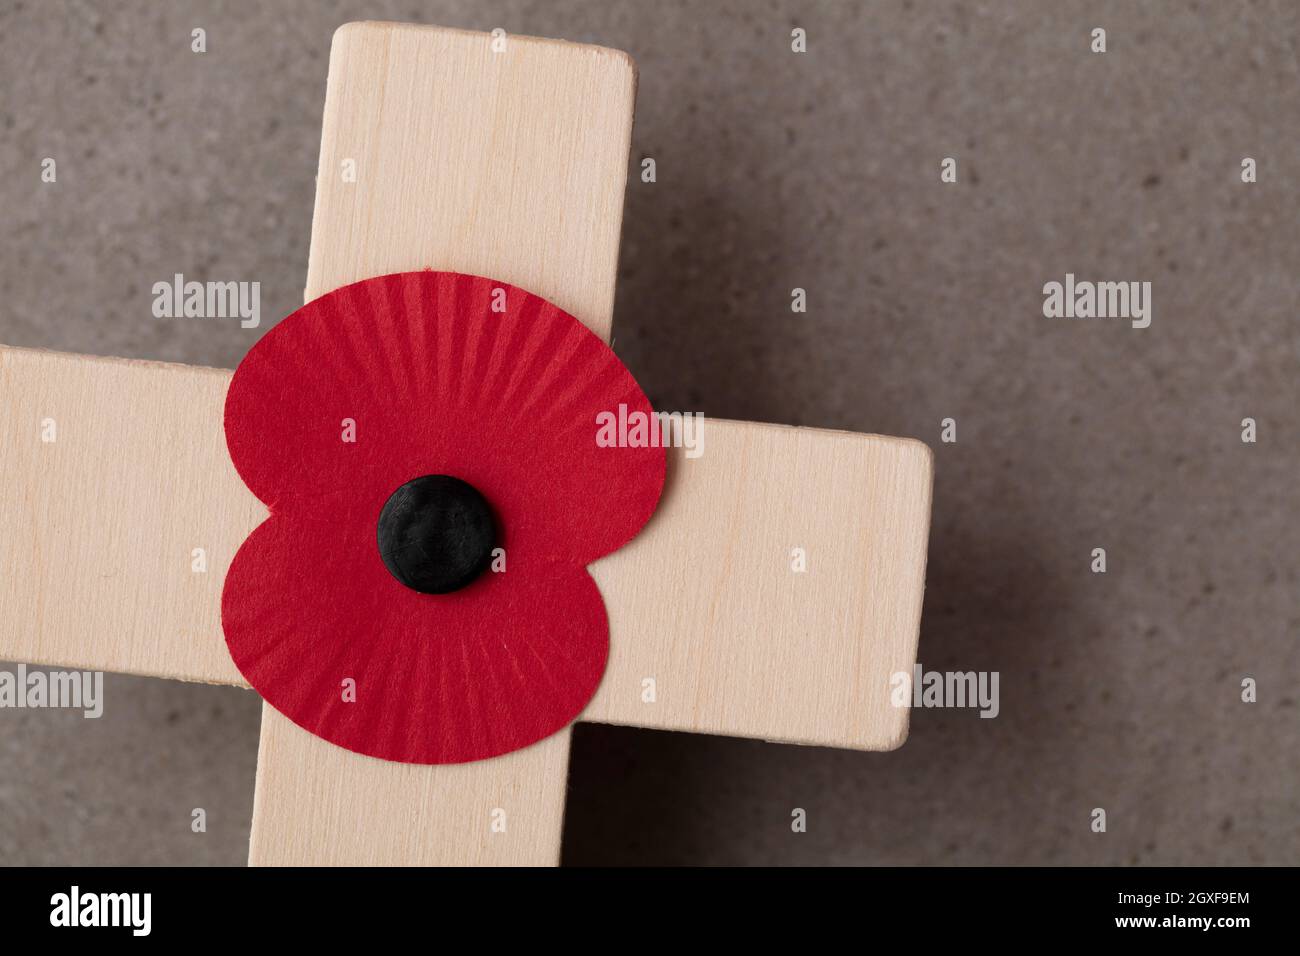 Un recuerdo de amapola roja en una cruz de madera. Concepto de día de recuerdo militar Foto de stock